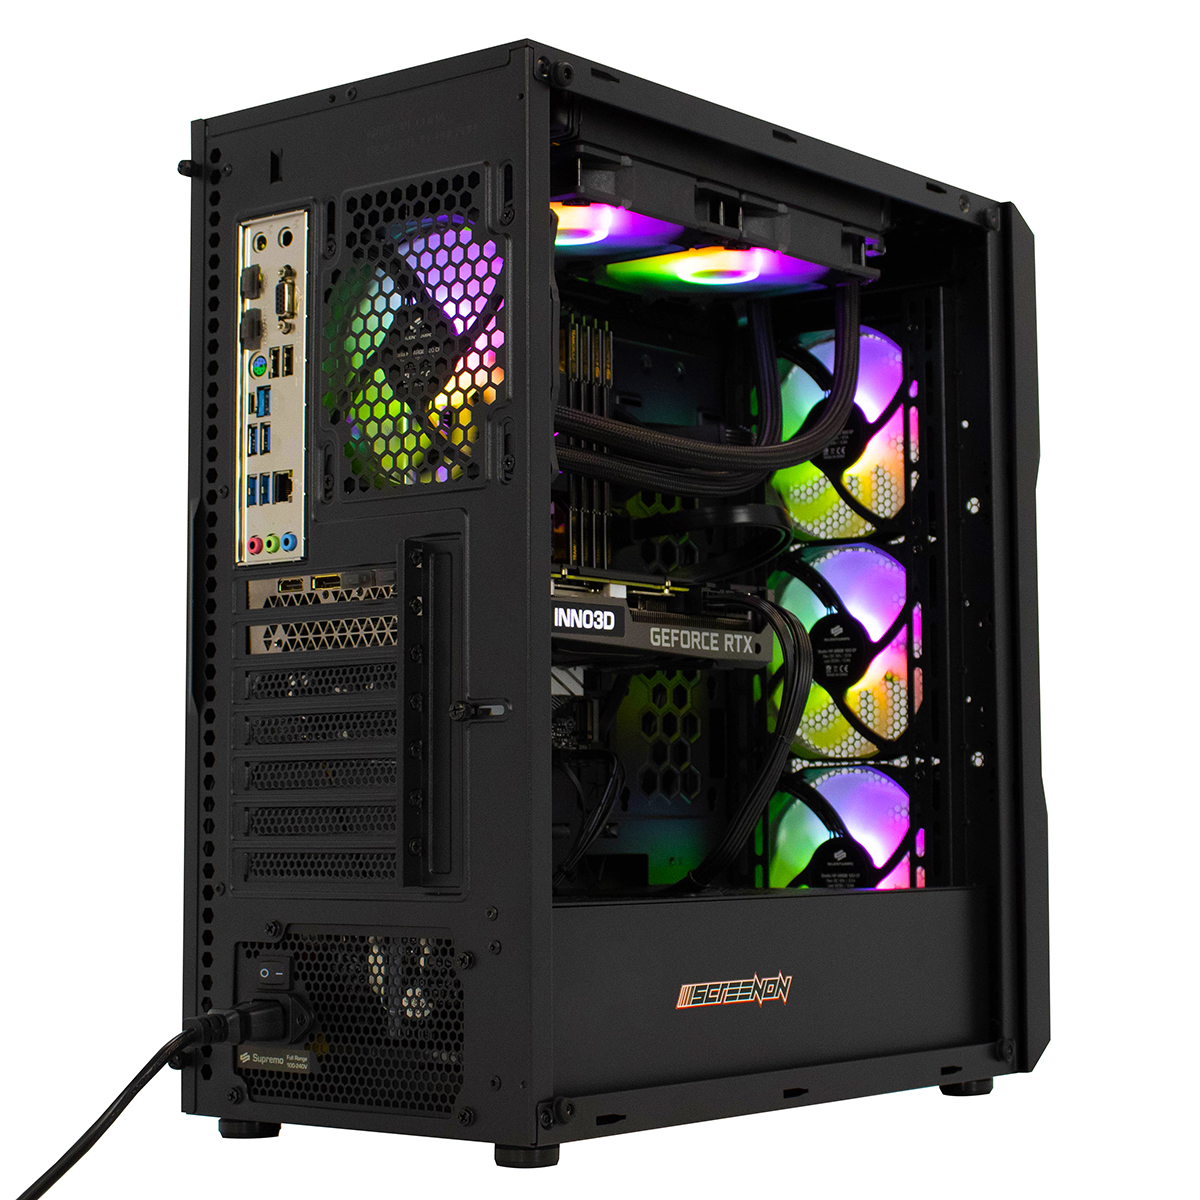 SCREENON Y52184 – 16 RAM, RTX GB 480 GB SSD, PC, NVIDIA GeForce 3060 V1, Gaming